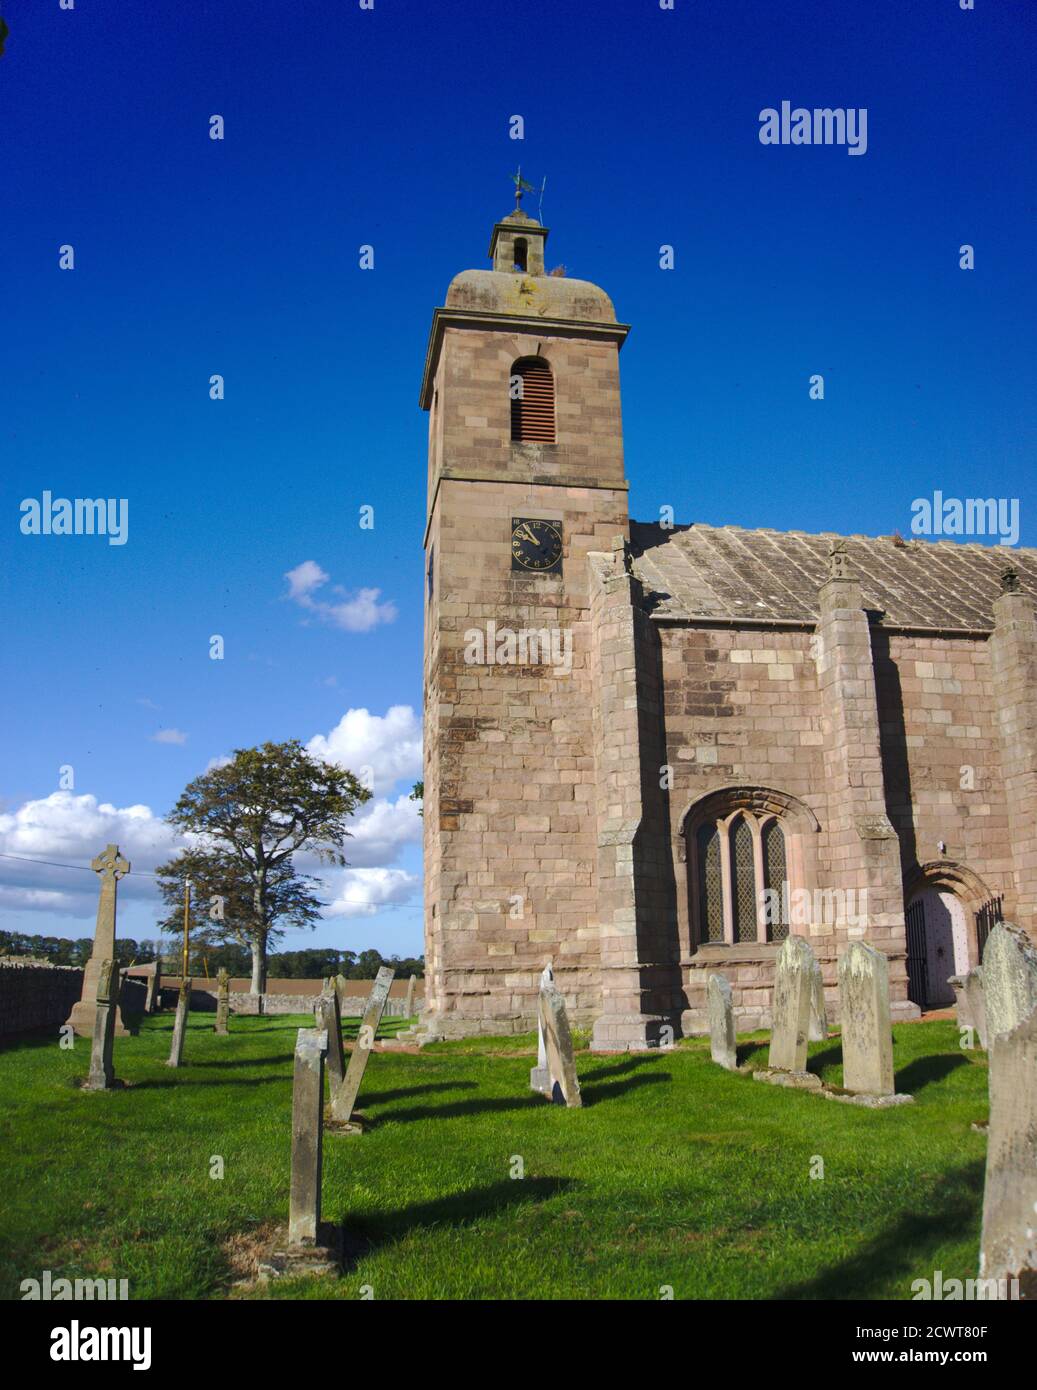 Extrémité ouest de l'église Ladykirk, construite par ordre du roi James IV à Berwickshire, frontières écossaises, Royaume-Uni. Fait maintenant partie de l'Écomusée de Flodden 1513. Banque D'Images